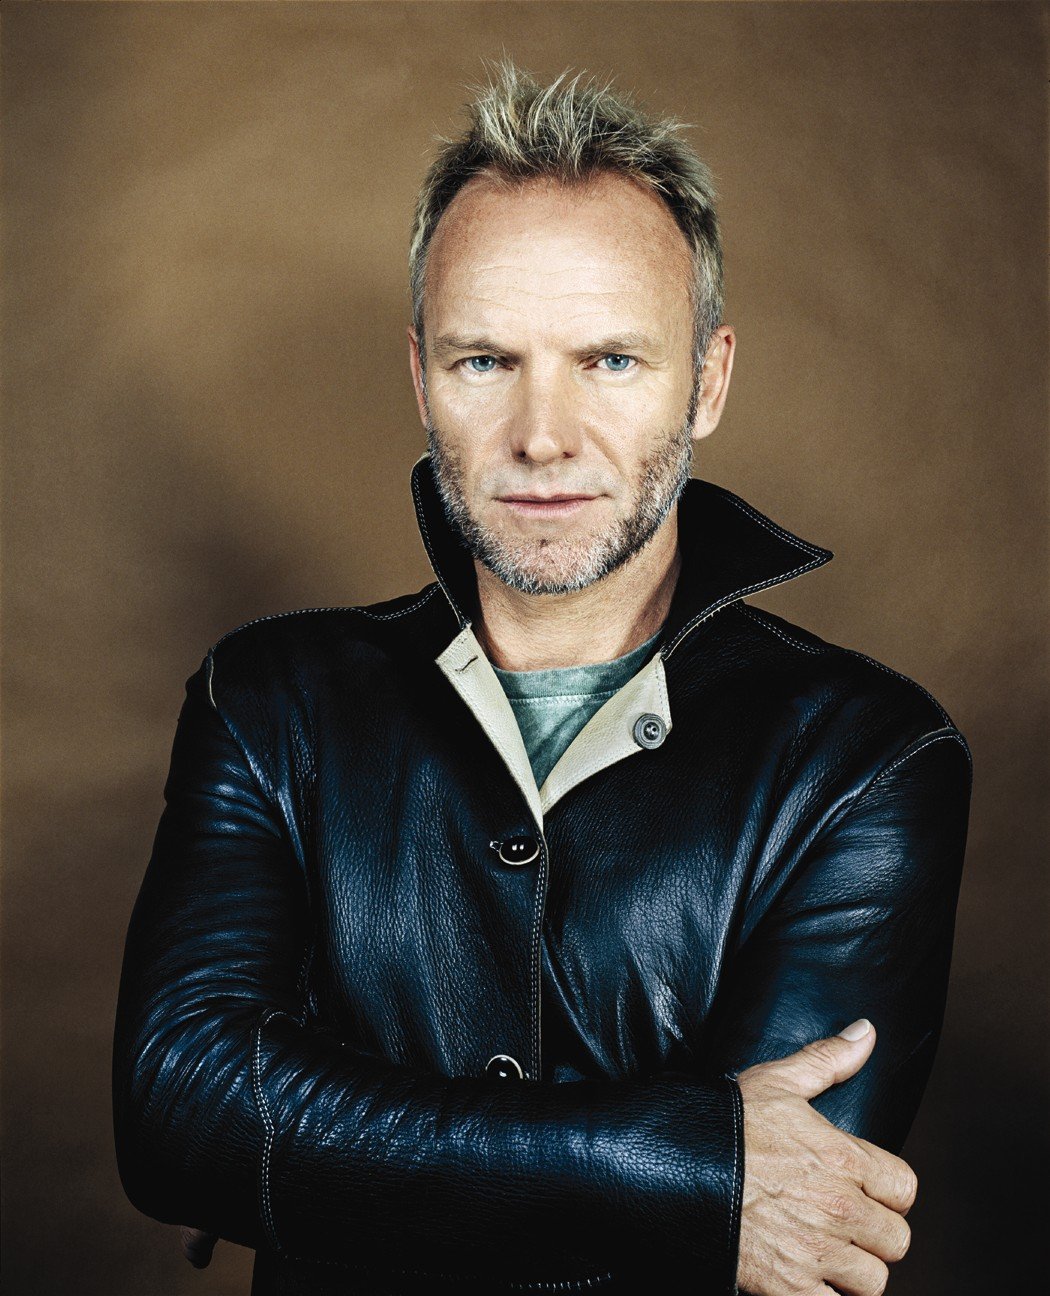 Sting znowu wystąpi w Polsce 